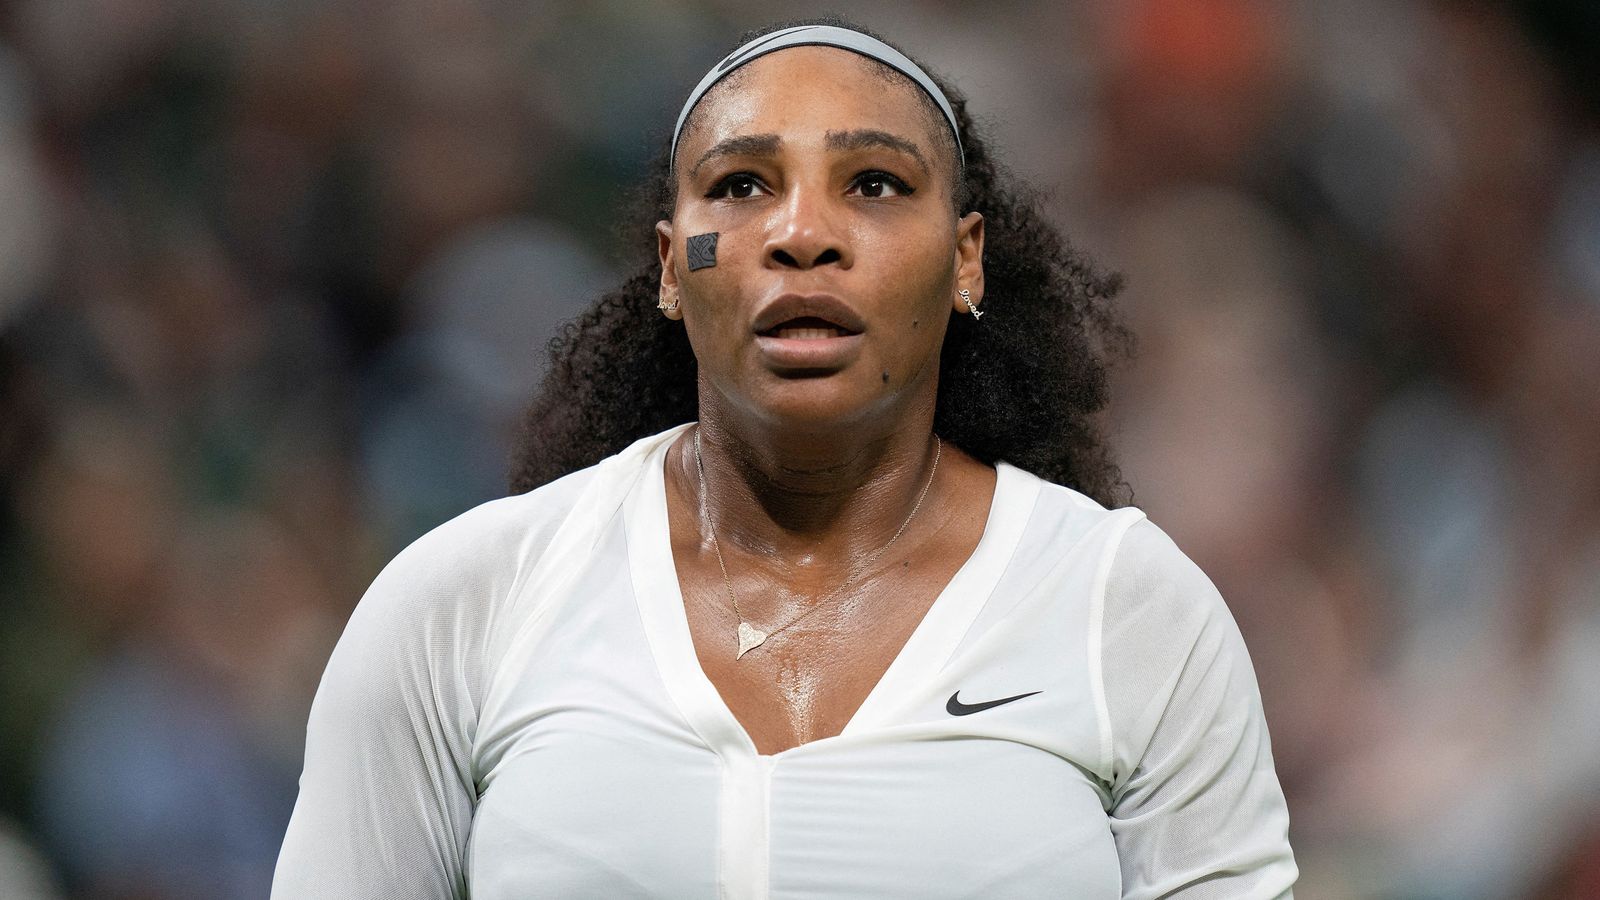 Serena Williams annonce son intention de prendre sa retraite : “J’évolue loin du tennis” |  Nouvelles américaines